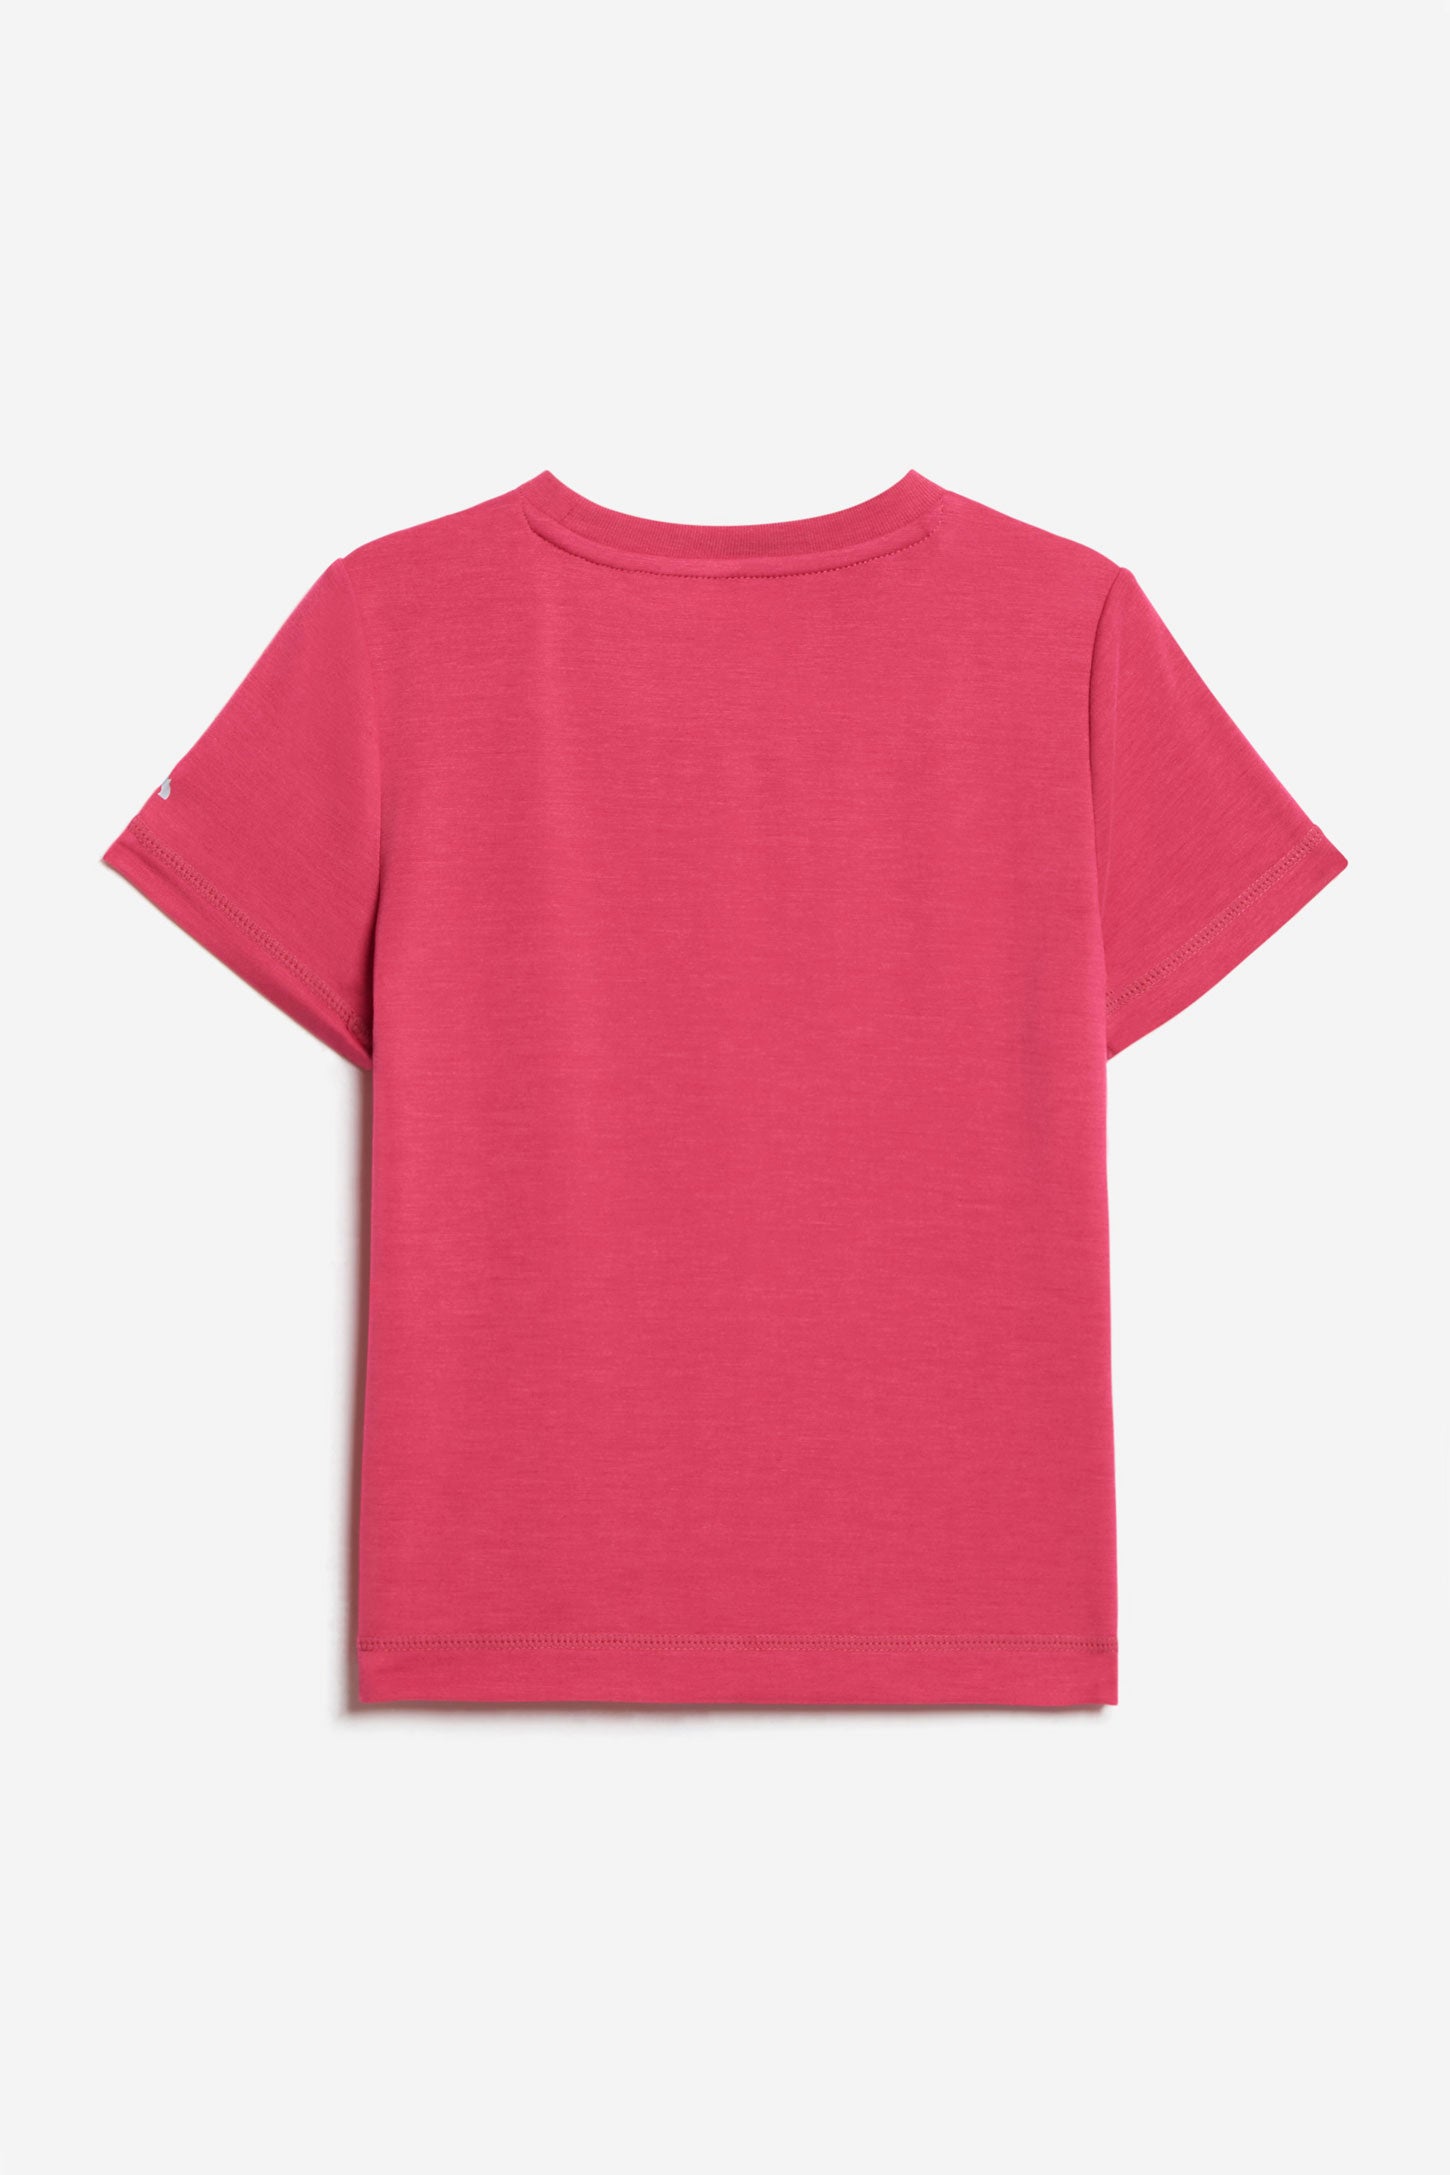 T-shirt imprimé BM - Enfant fille && ROSE FONCE